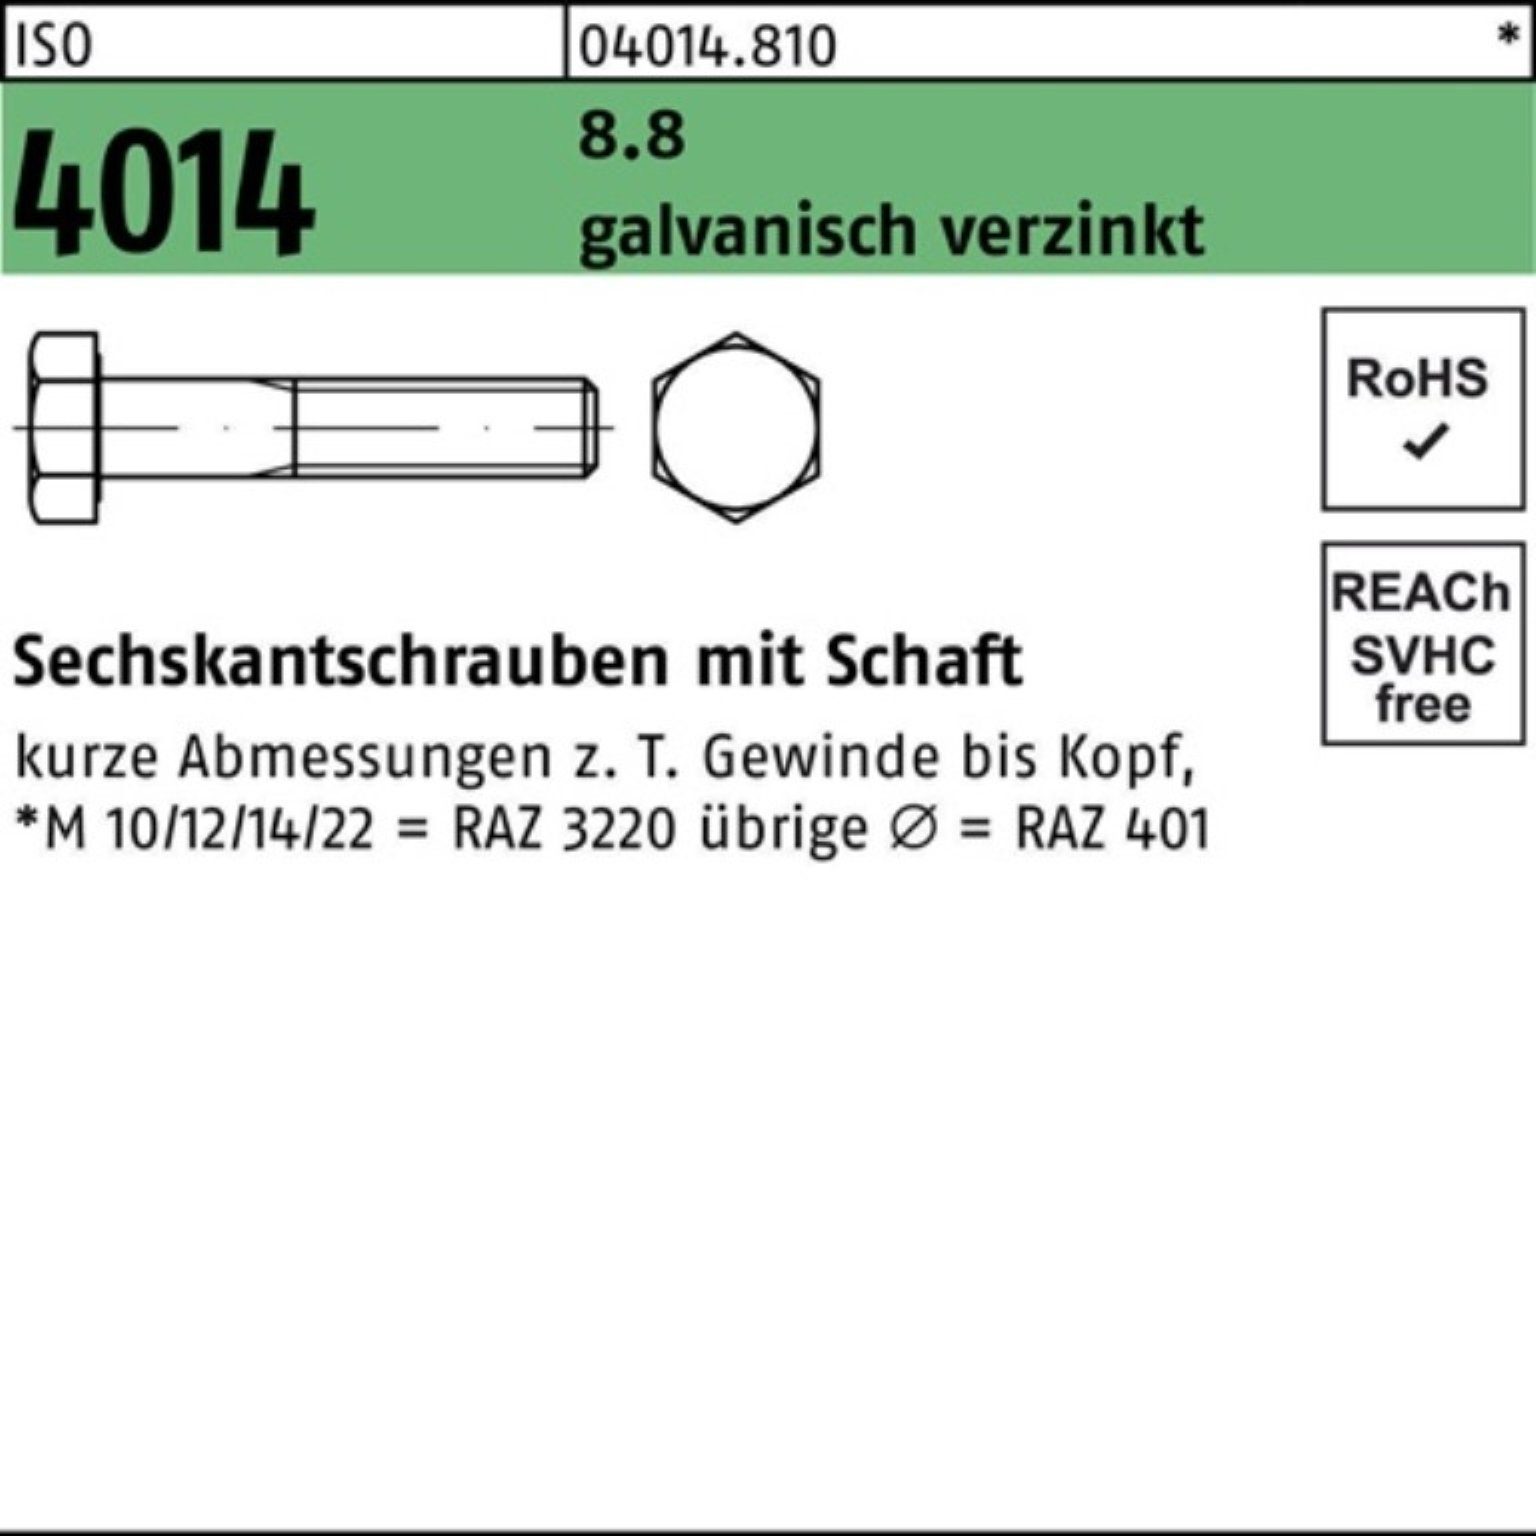 Bufab Sechskantschraube 100er 4014 Schaft galv.verz. 8.8 M42x 1 Sechskantschraube Pack ISO 150